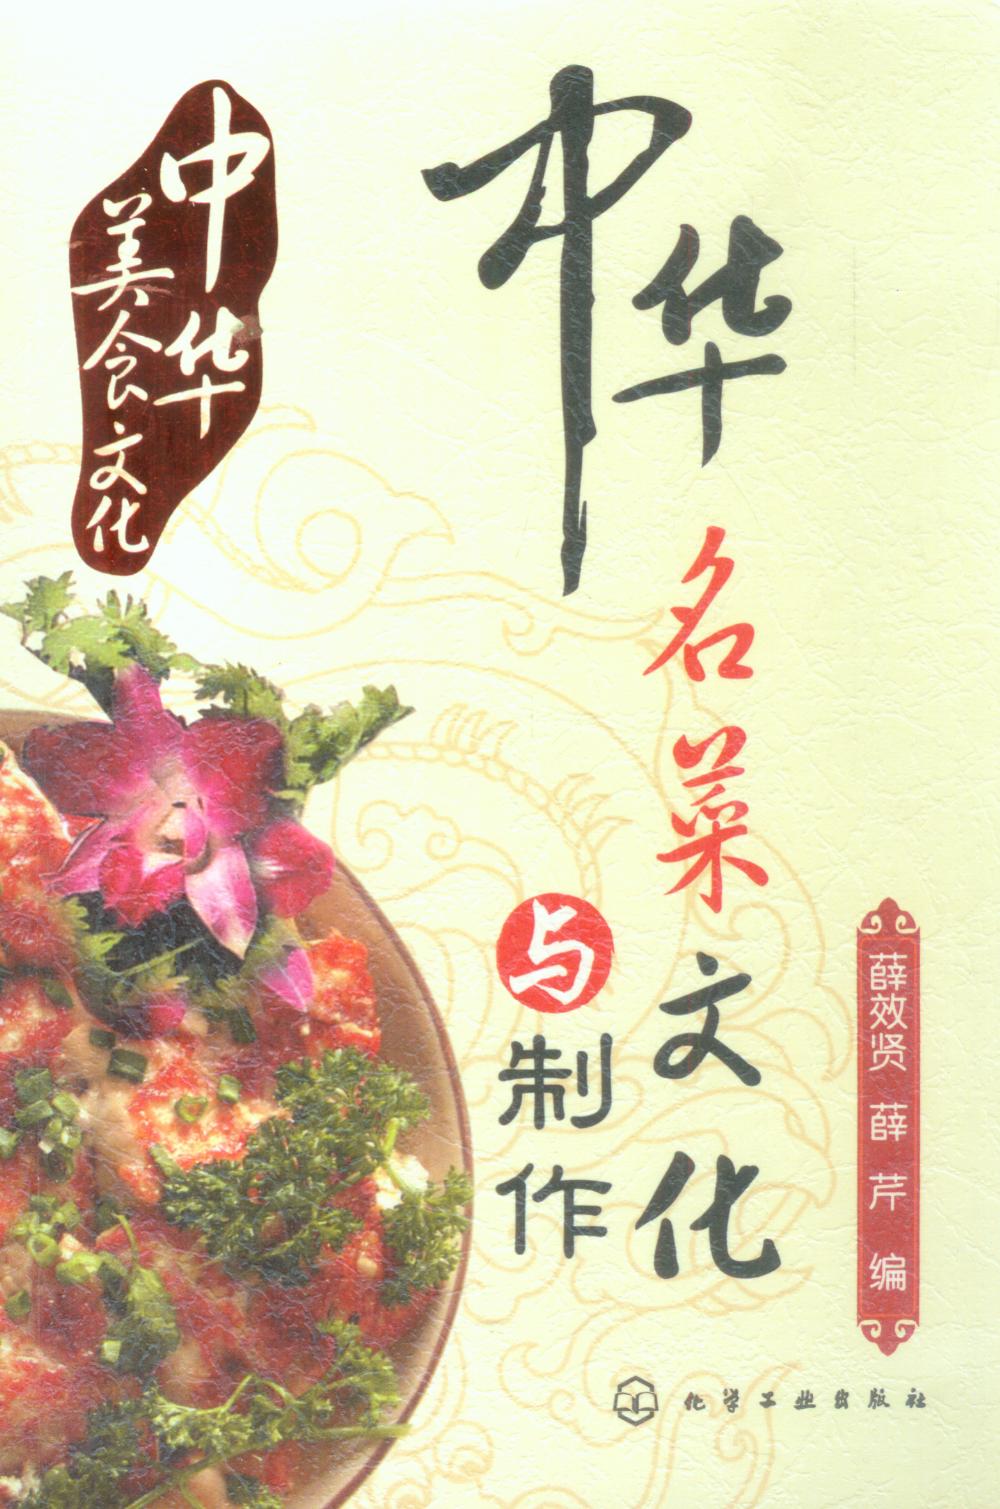 中華名菜文化與製作